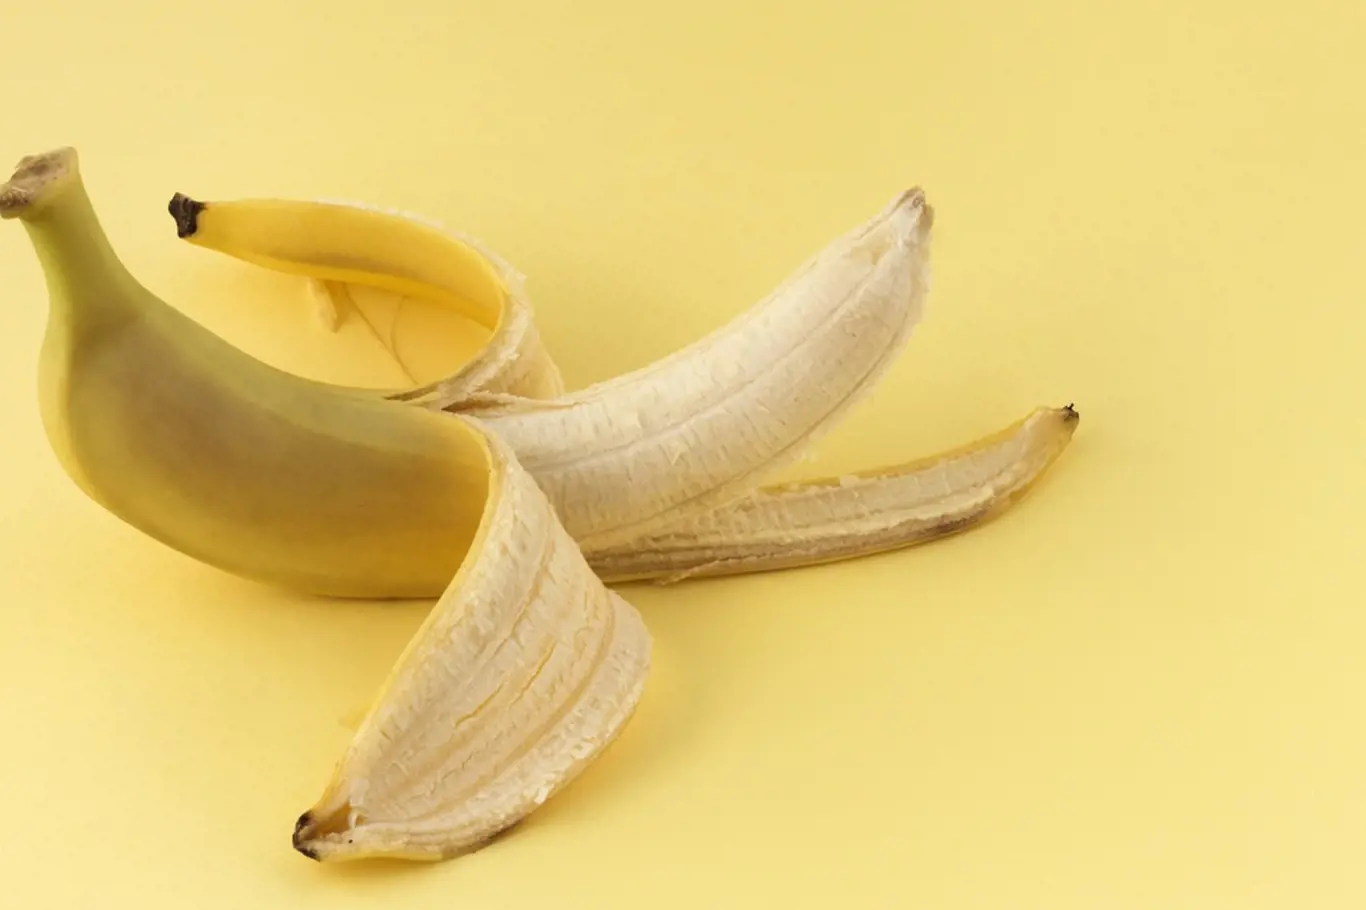 Banánové slupky mají mnohé použití.